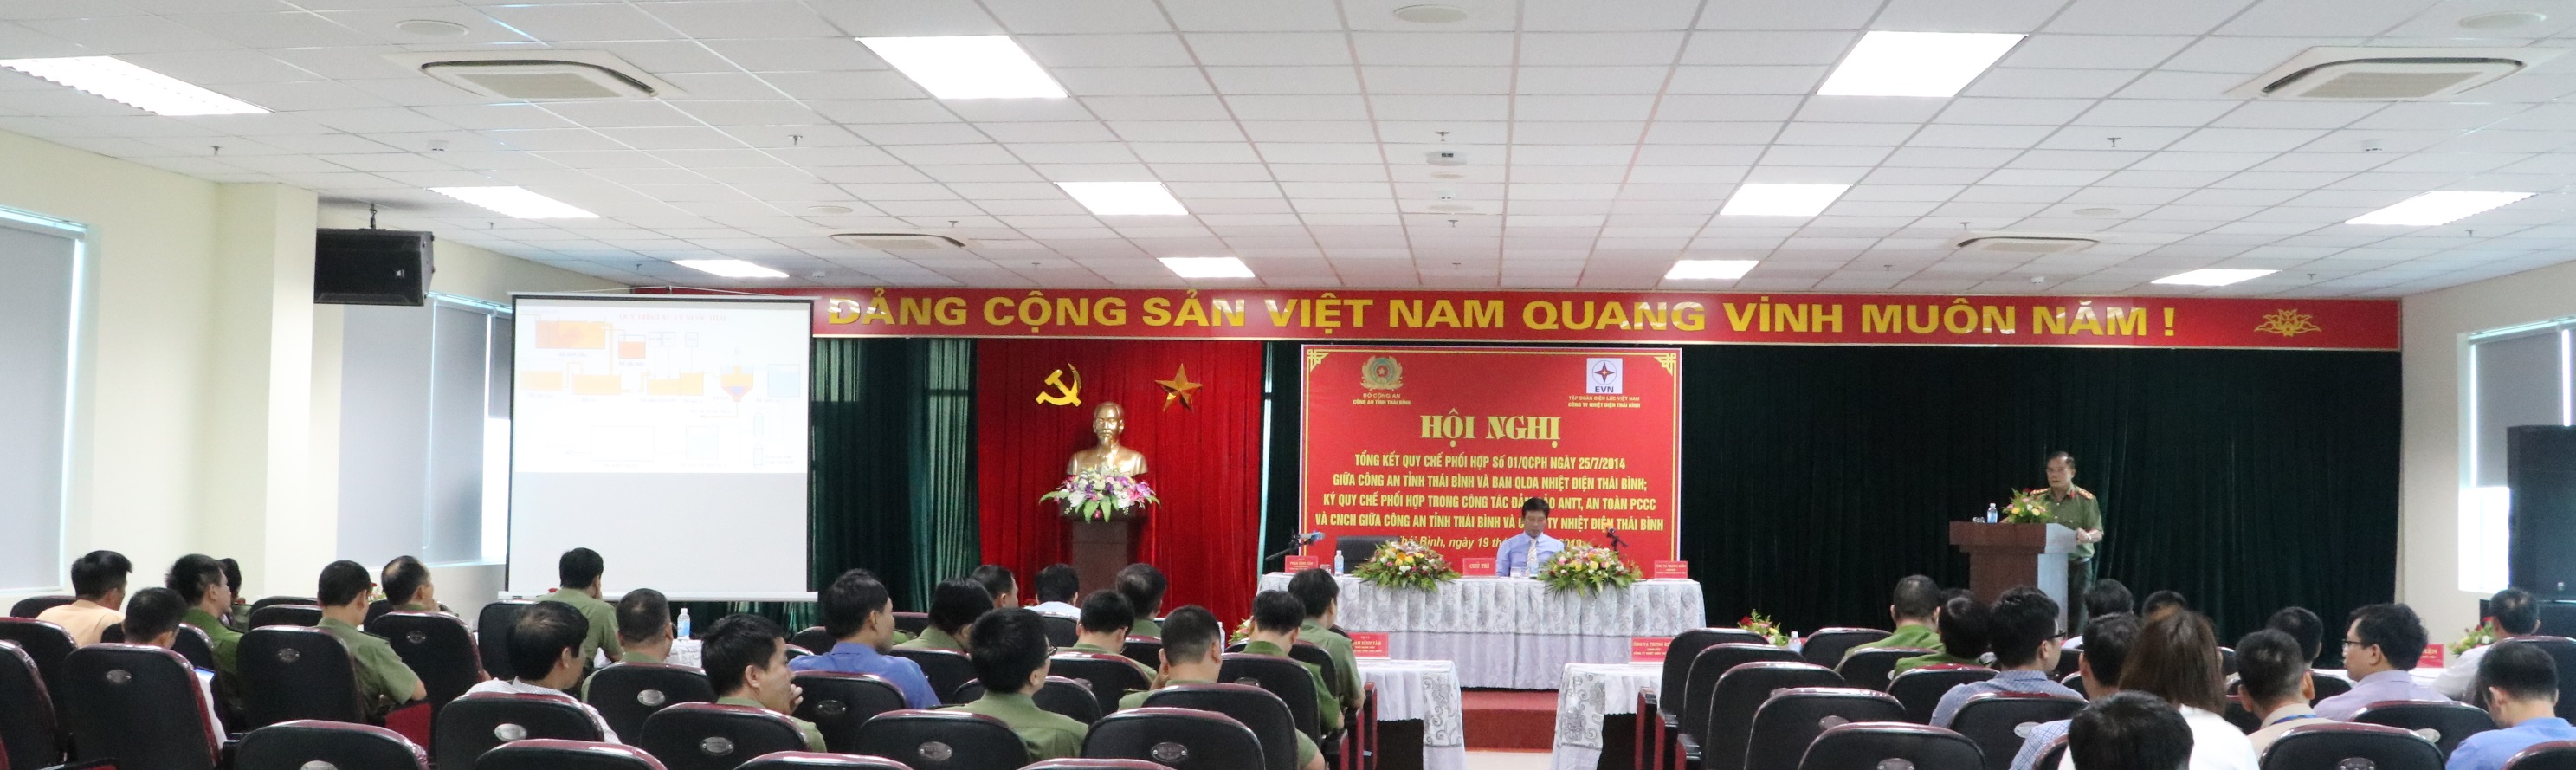 Đại tá Phạm Đình Tâm – Phó Giám đốc Công an tỉnh Thái Bình phát biểu tại Hội Nghị